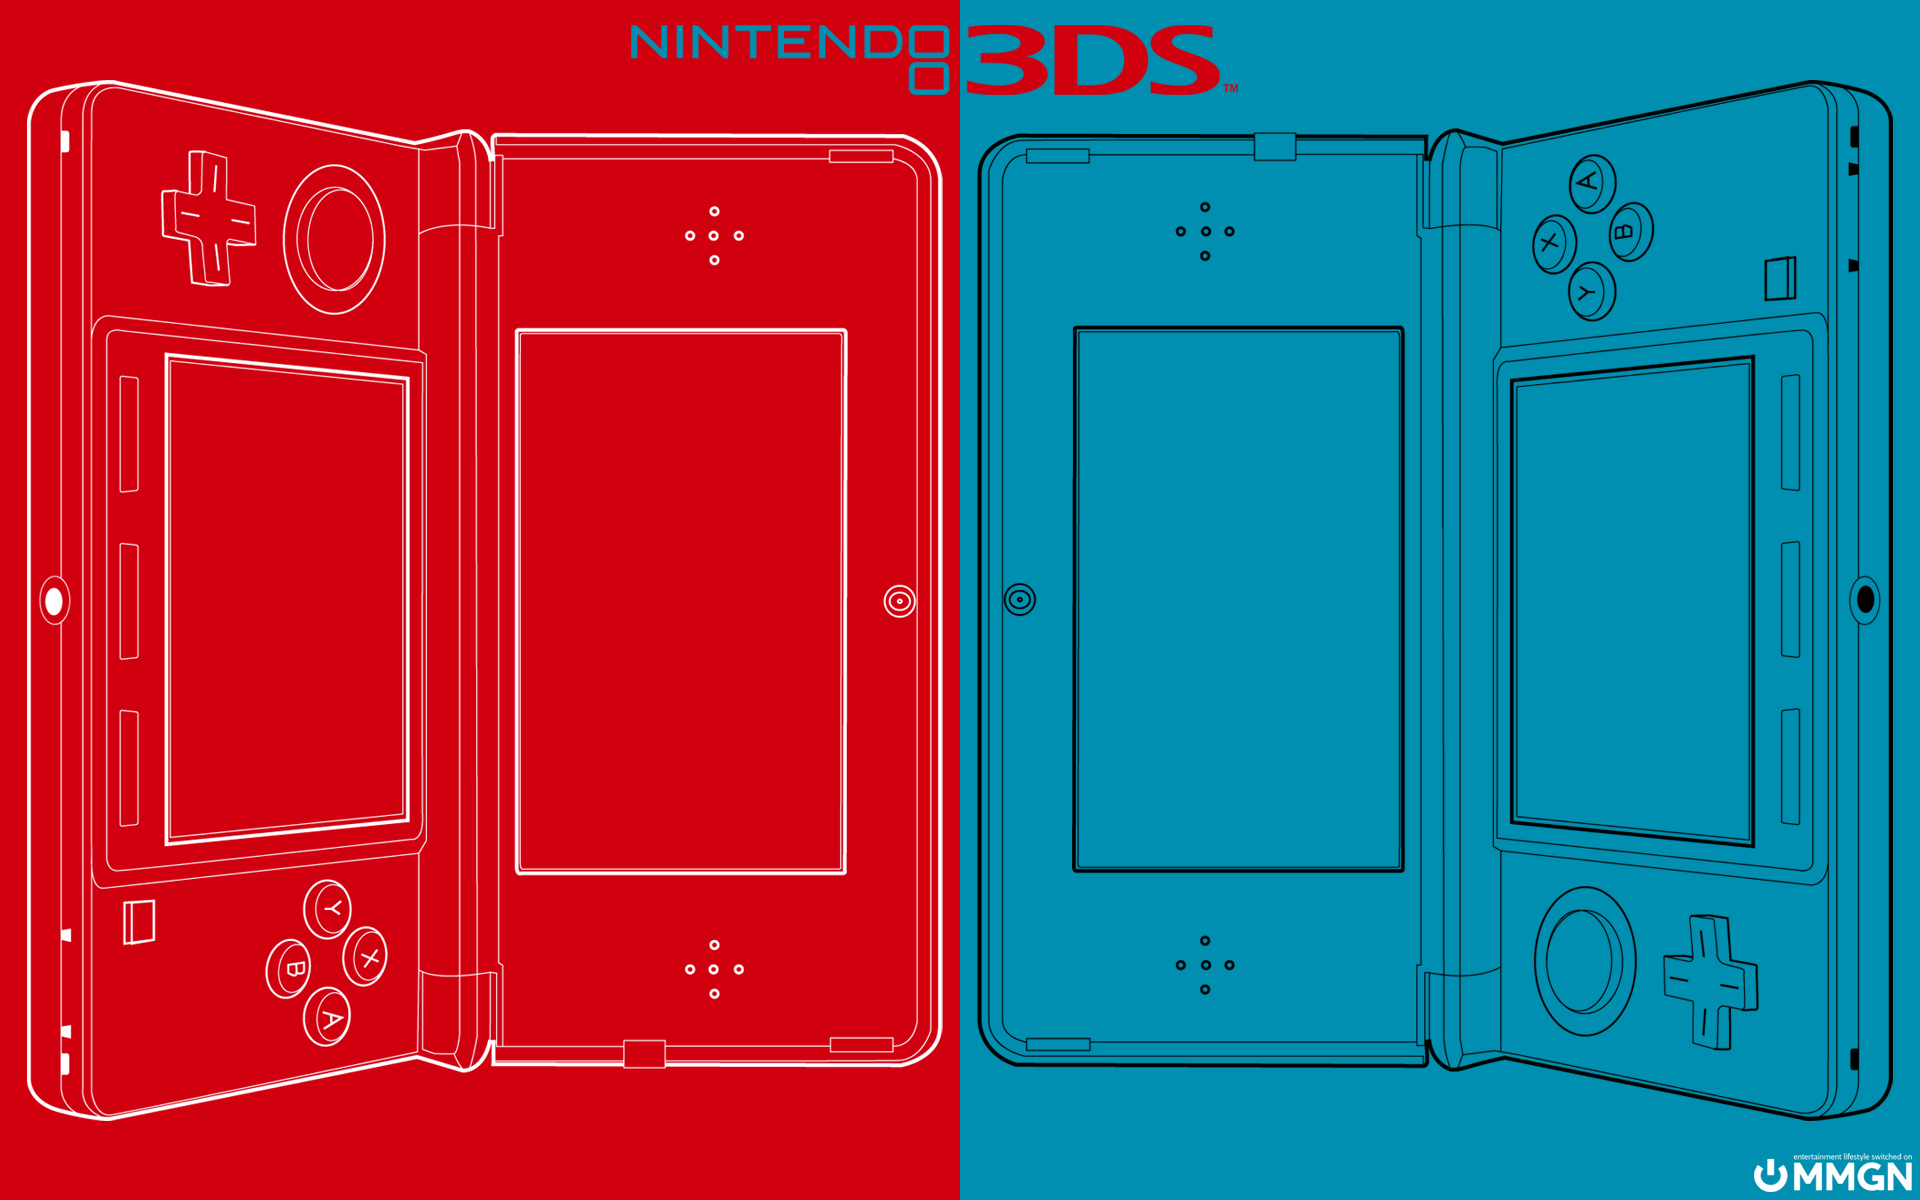 50+] Nintendo 3DS Wallpaper - WallpaperSafari